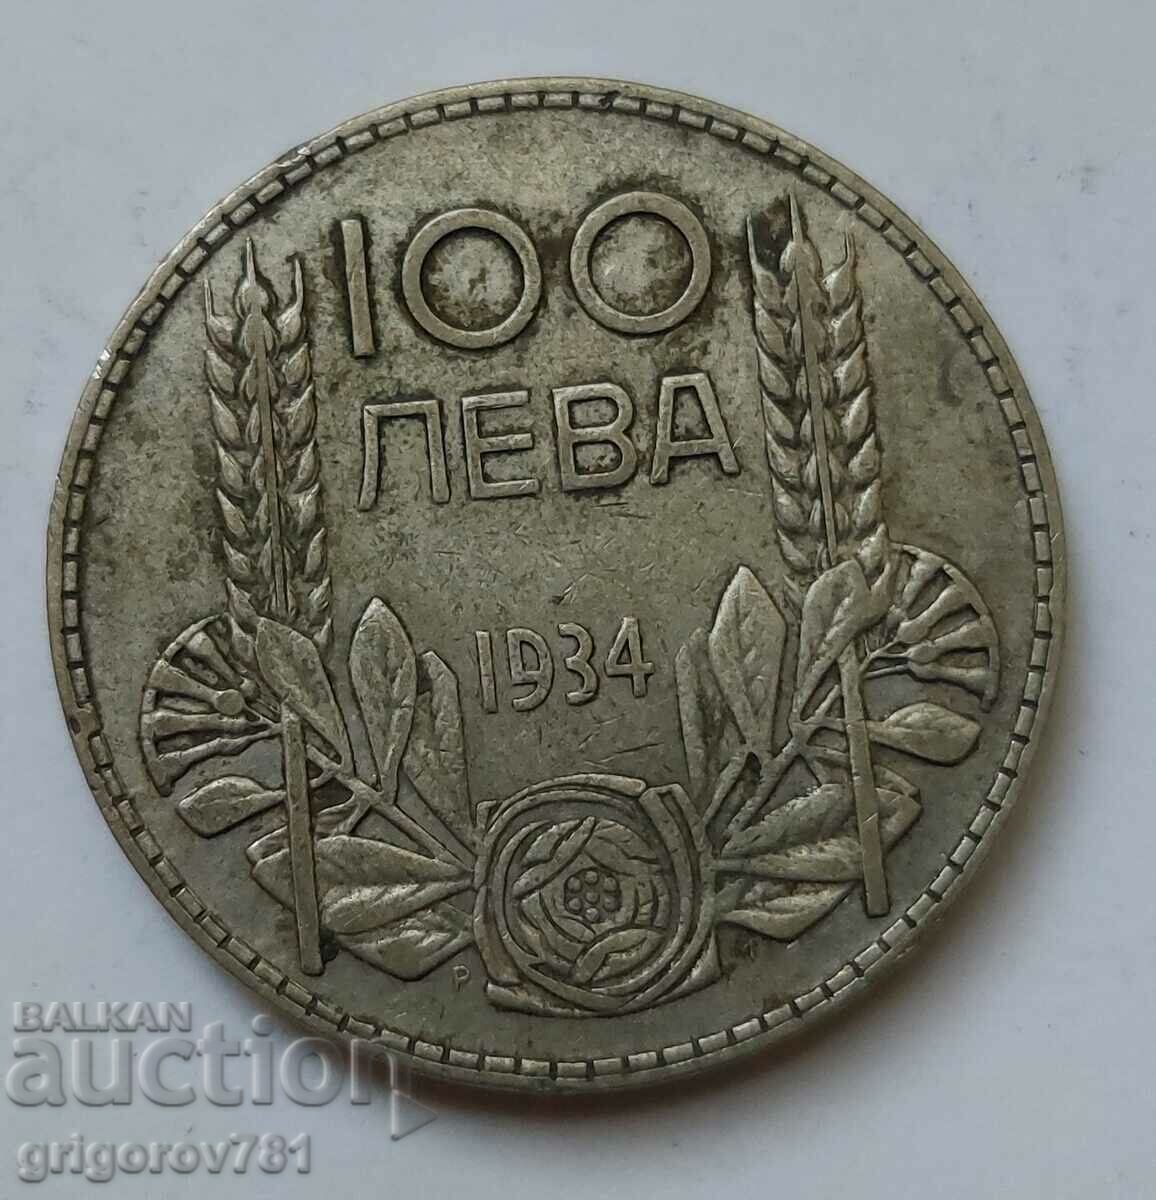 Ασήμι 100 λέβα Βουλγαρία 1934 - ασημένιο νόμισμα #50